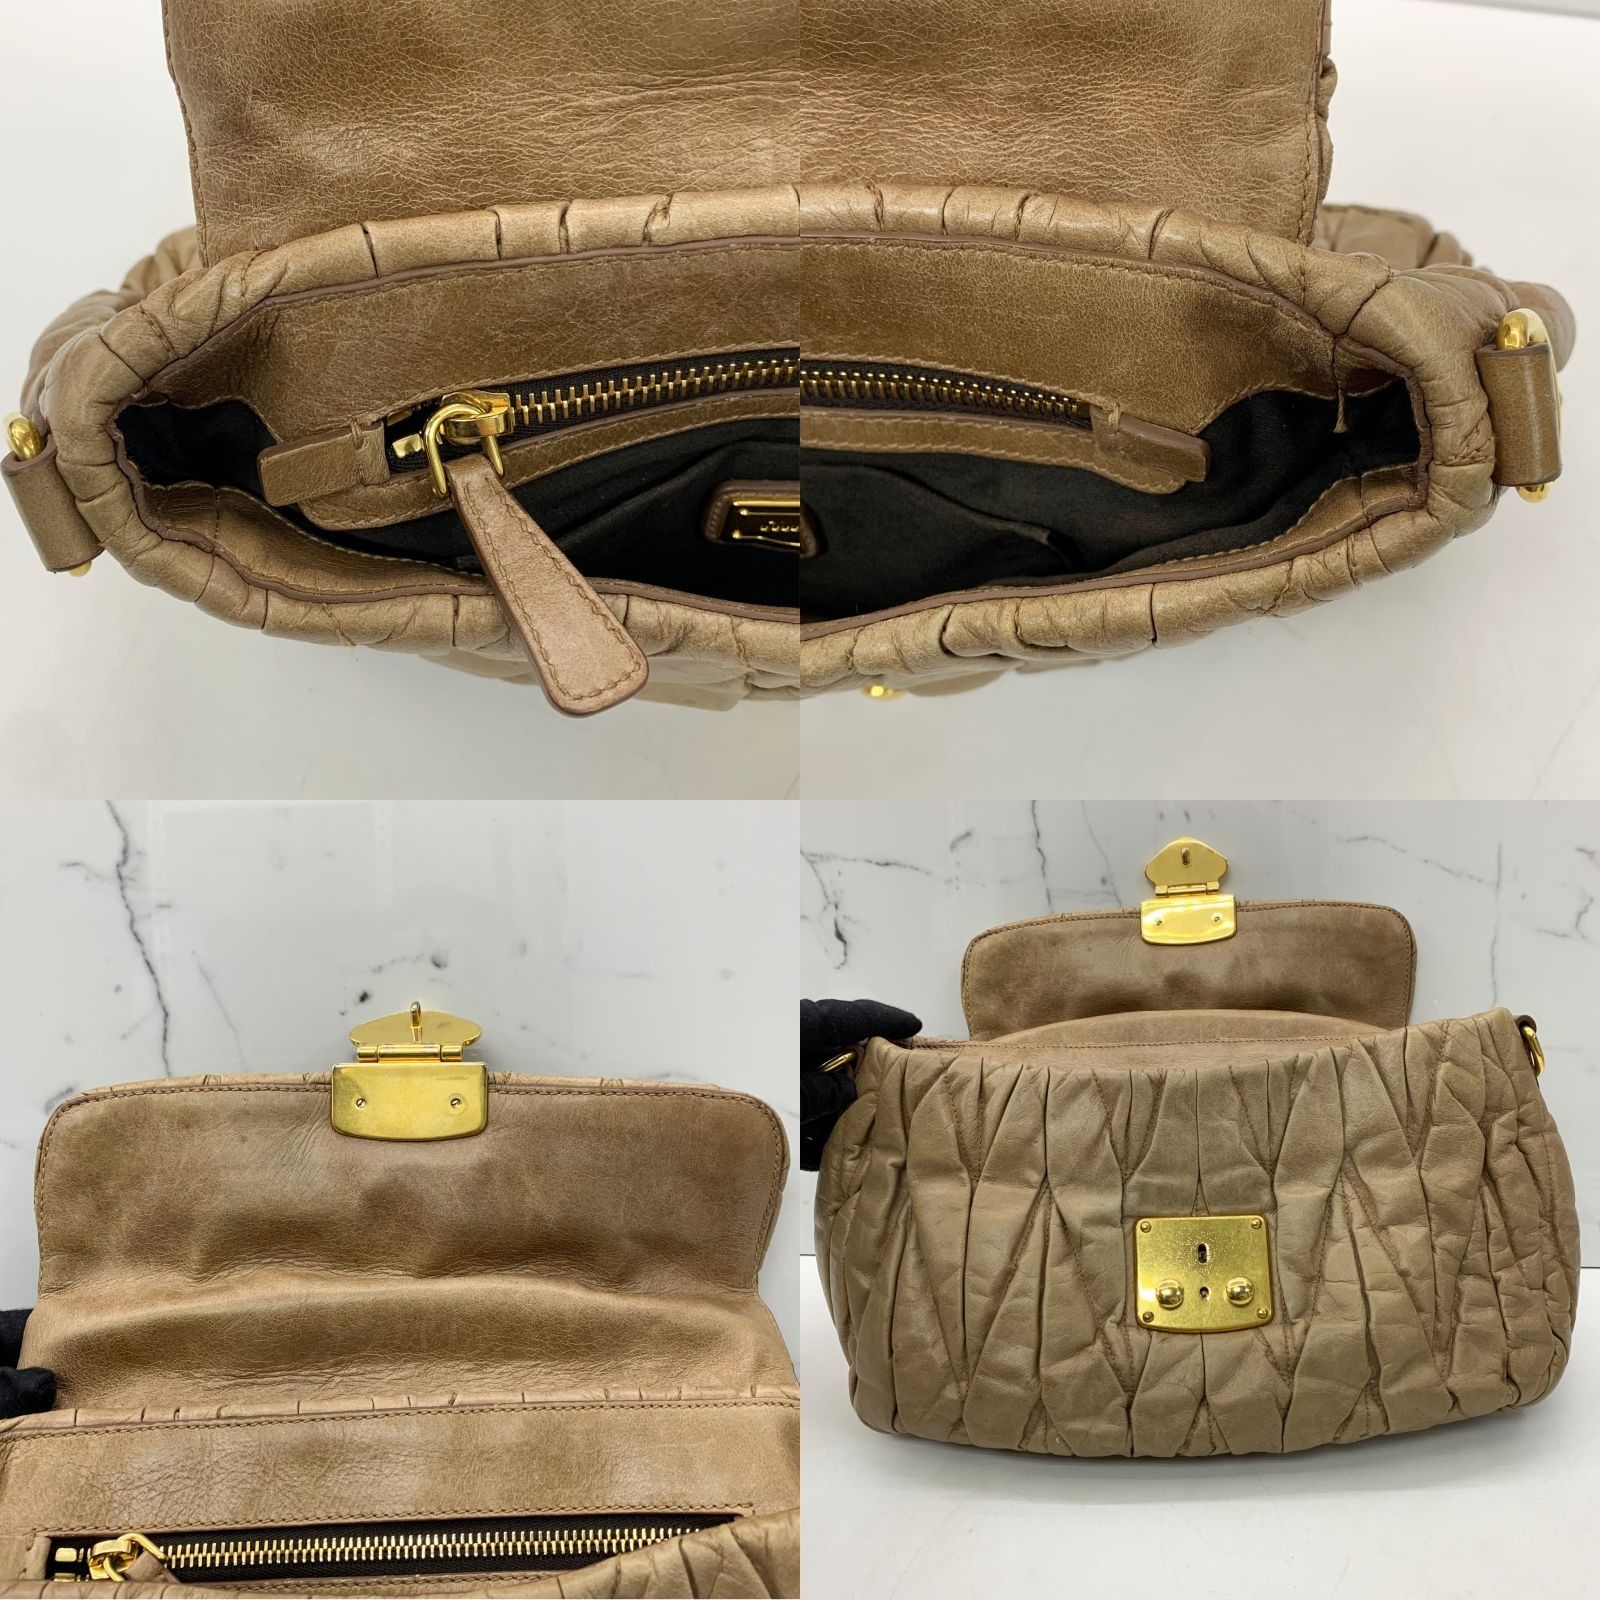 Leather handbag Miu Miu Brown in Leather - 23703774